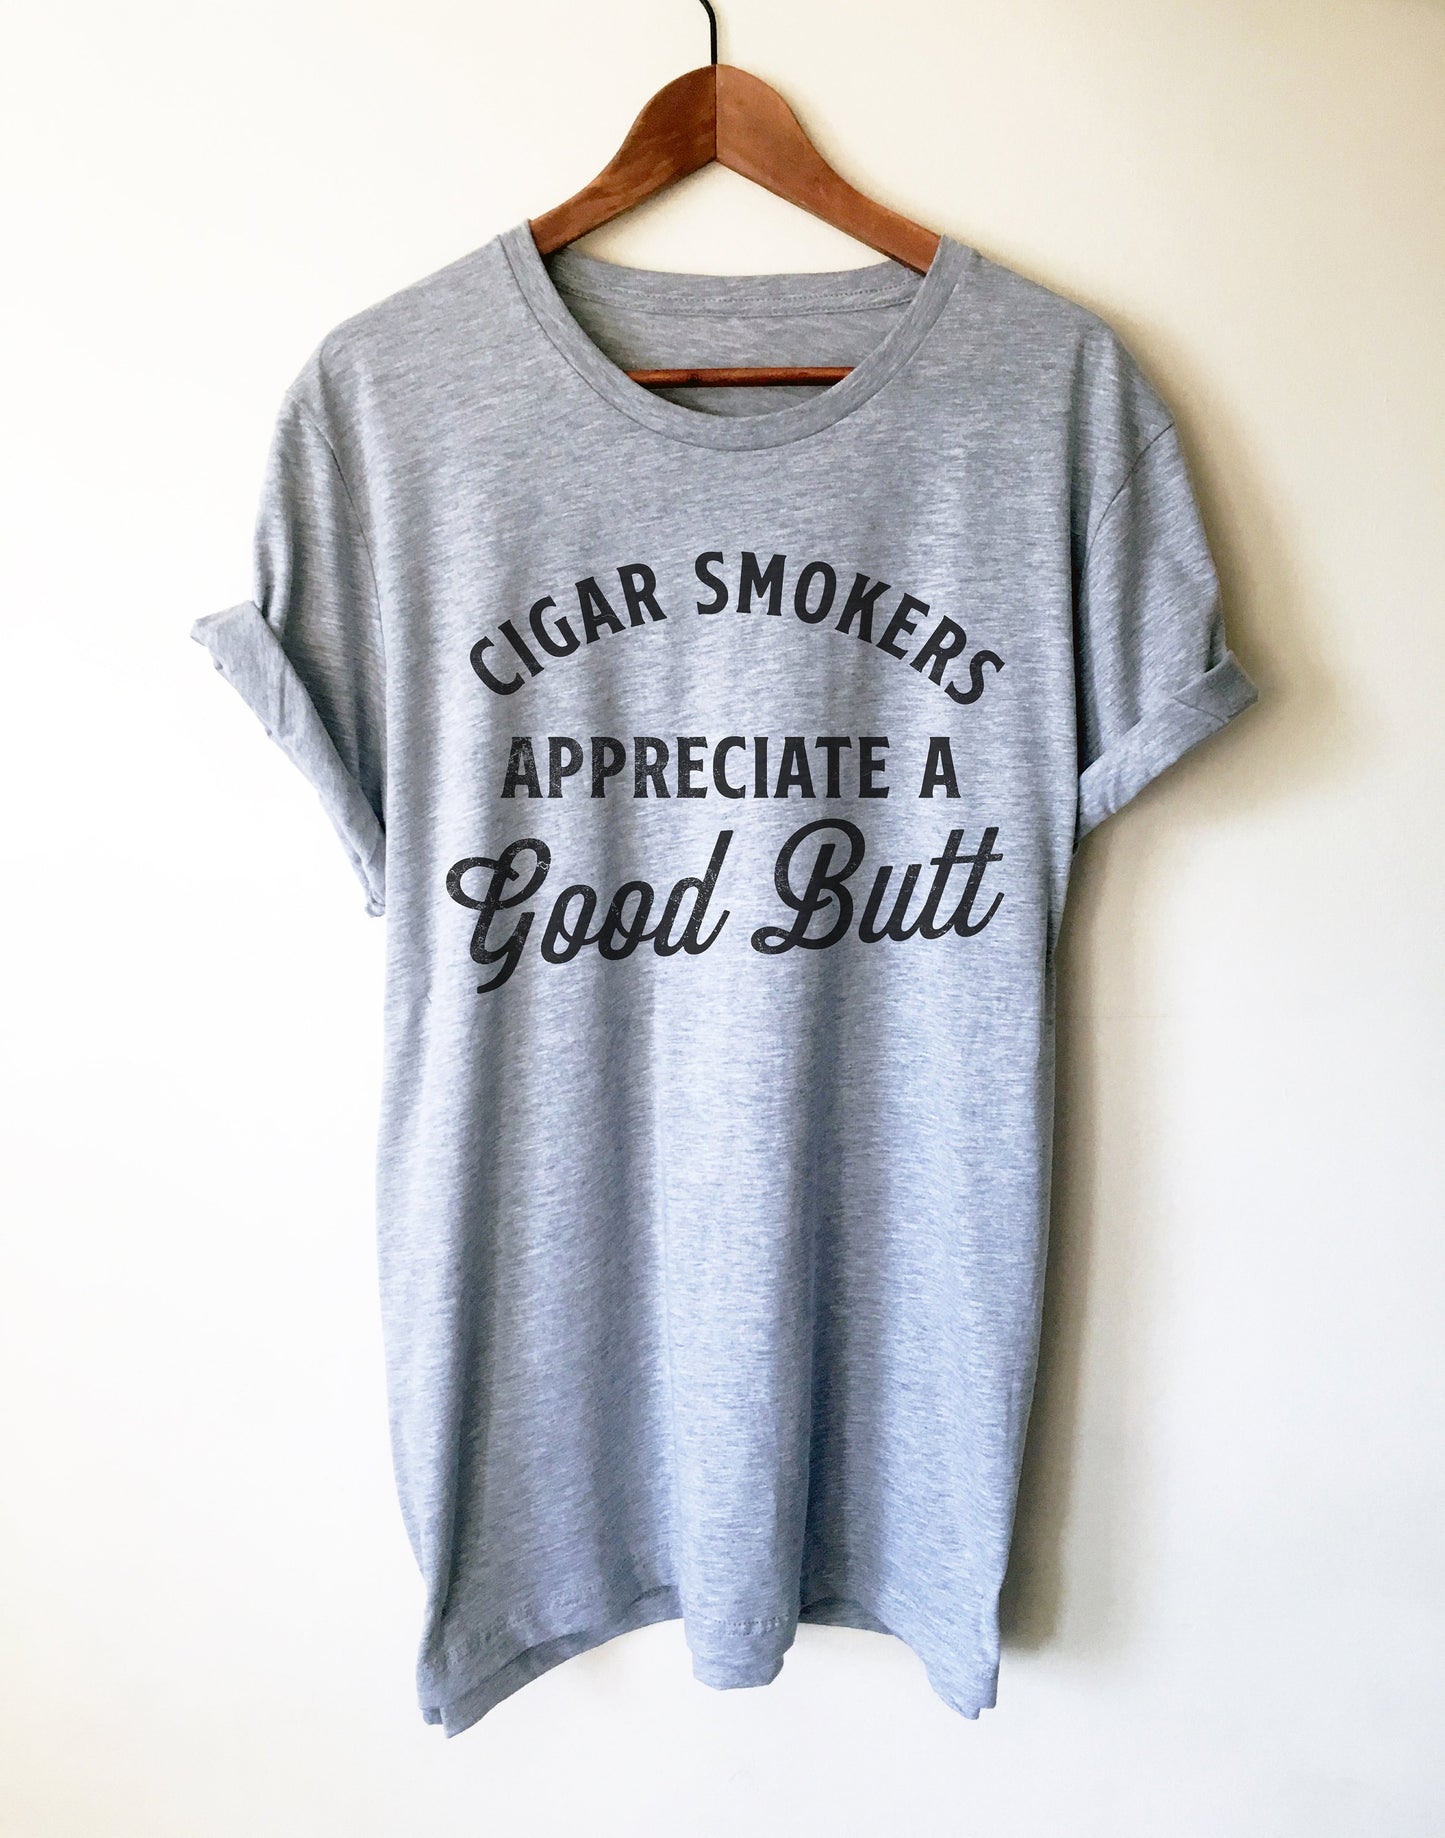 Cigar Smokers Appreciate A Good Butt Unisex Shirt - Cigar Shirt, Cigar Lover Gift, Unique Cigar Gifts, Dad Shirt, Husband Shirt, Fathers Day